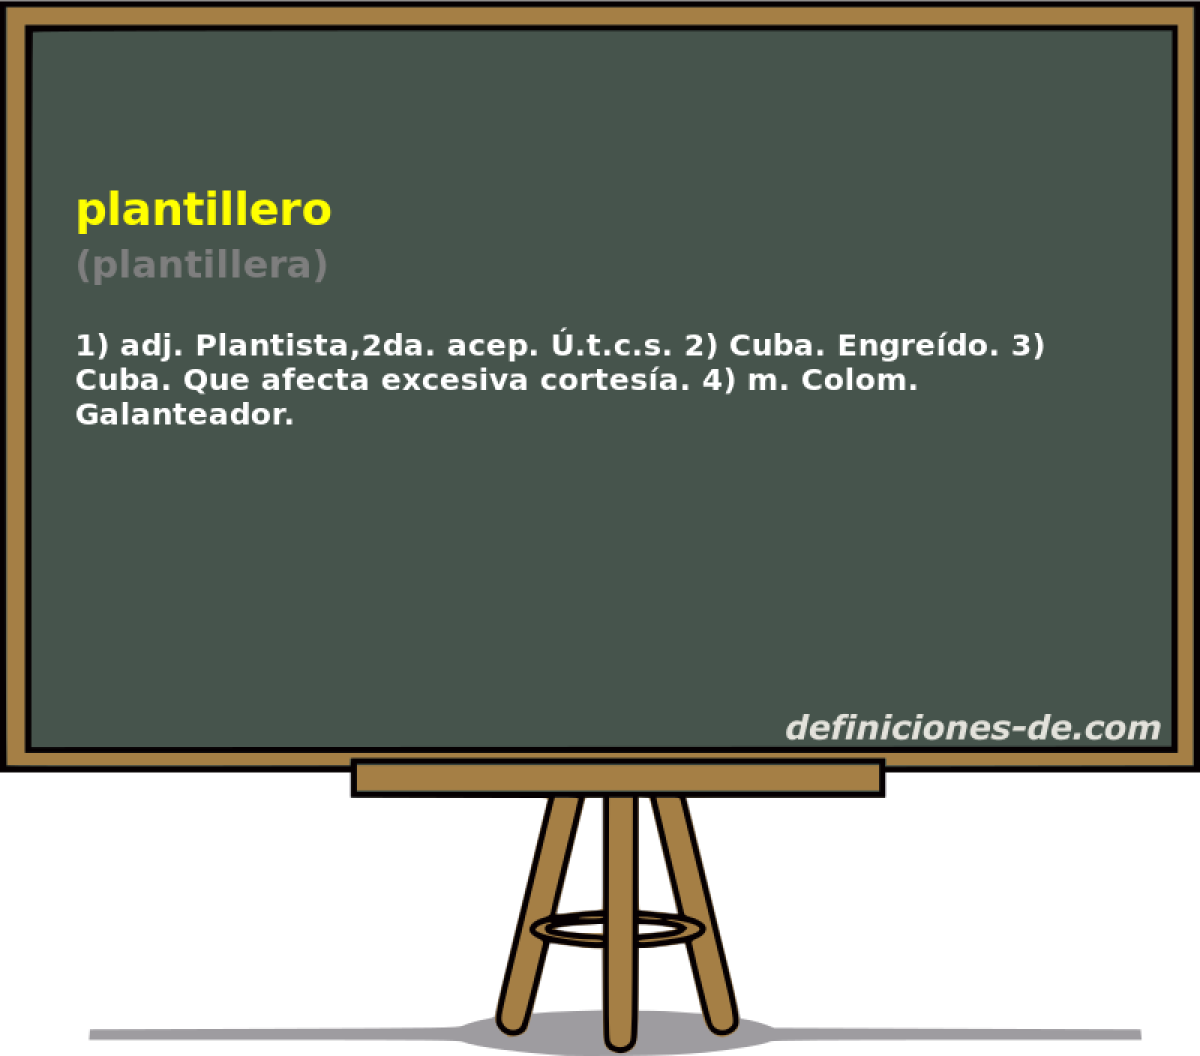 plantillero (plantillera)